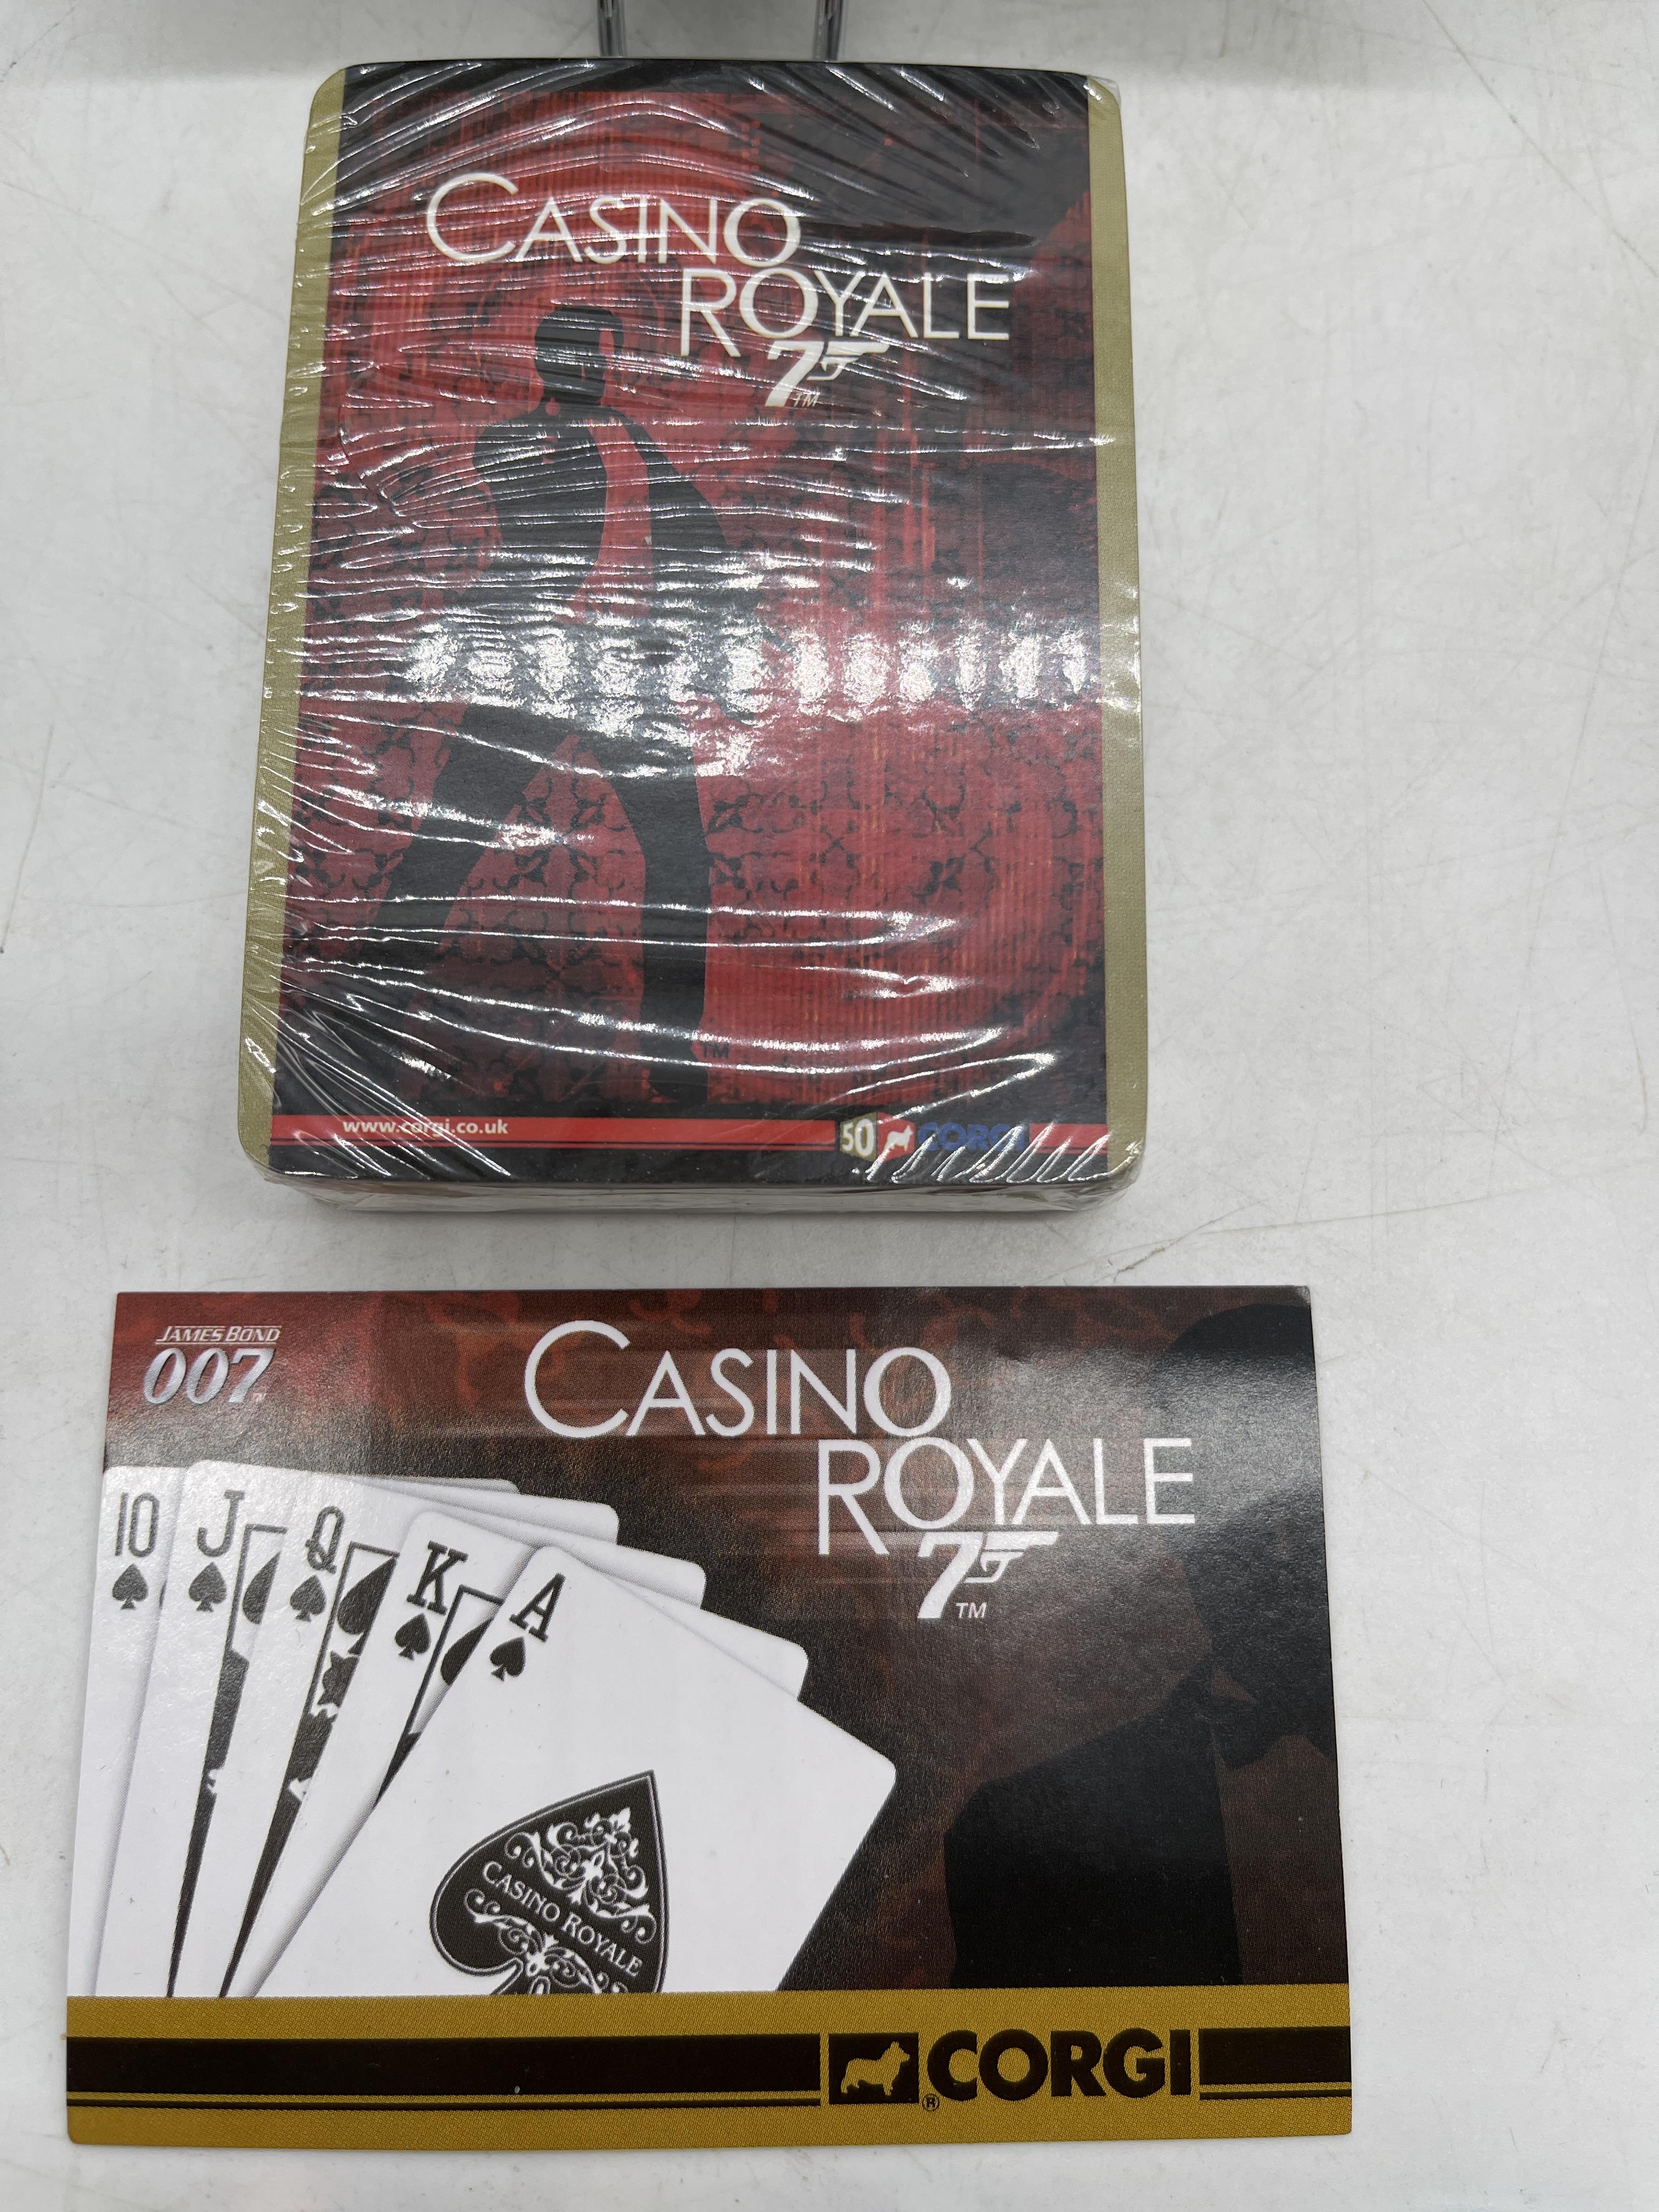 007 Casino Royal Corgi Box Kit - Image 5 of 20